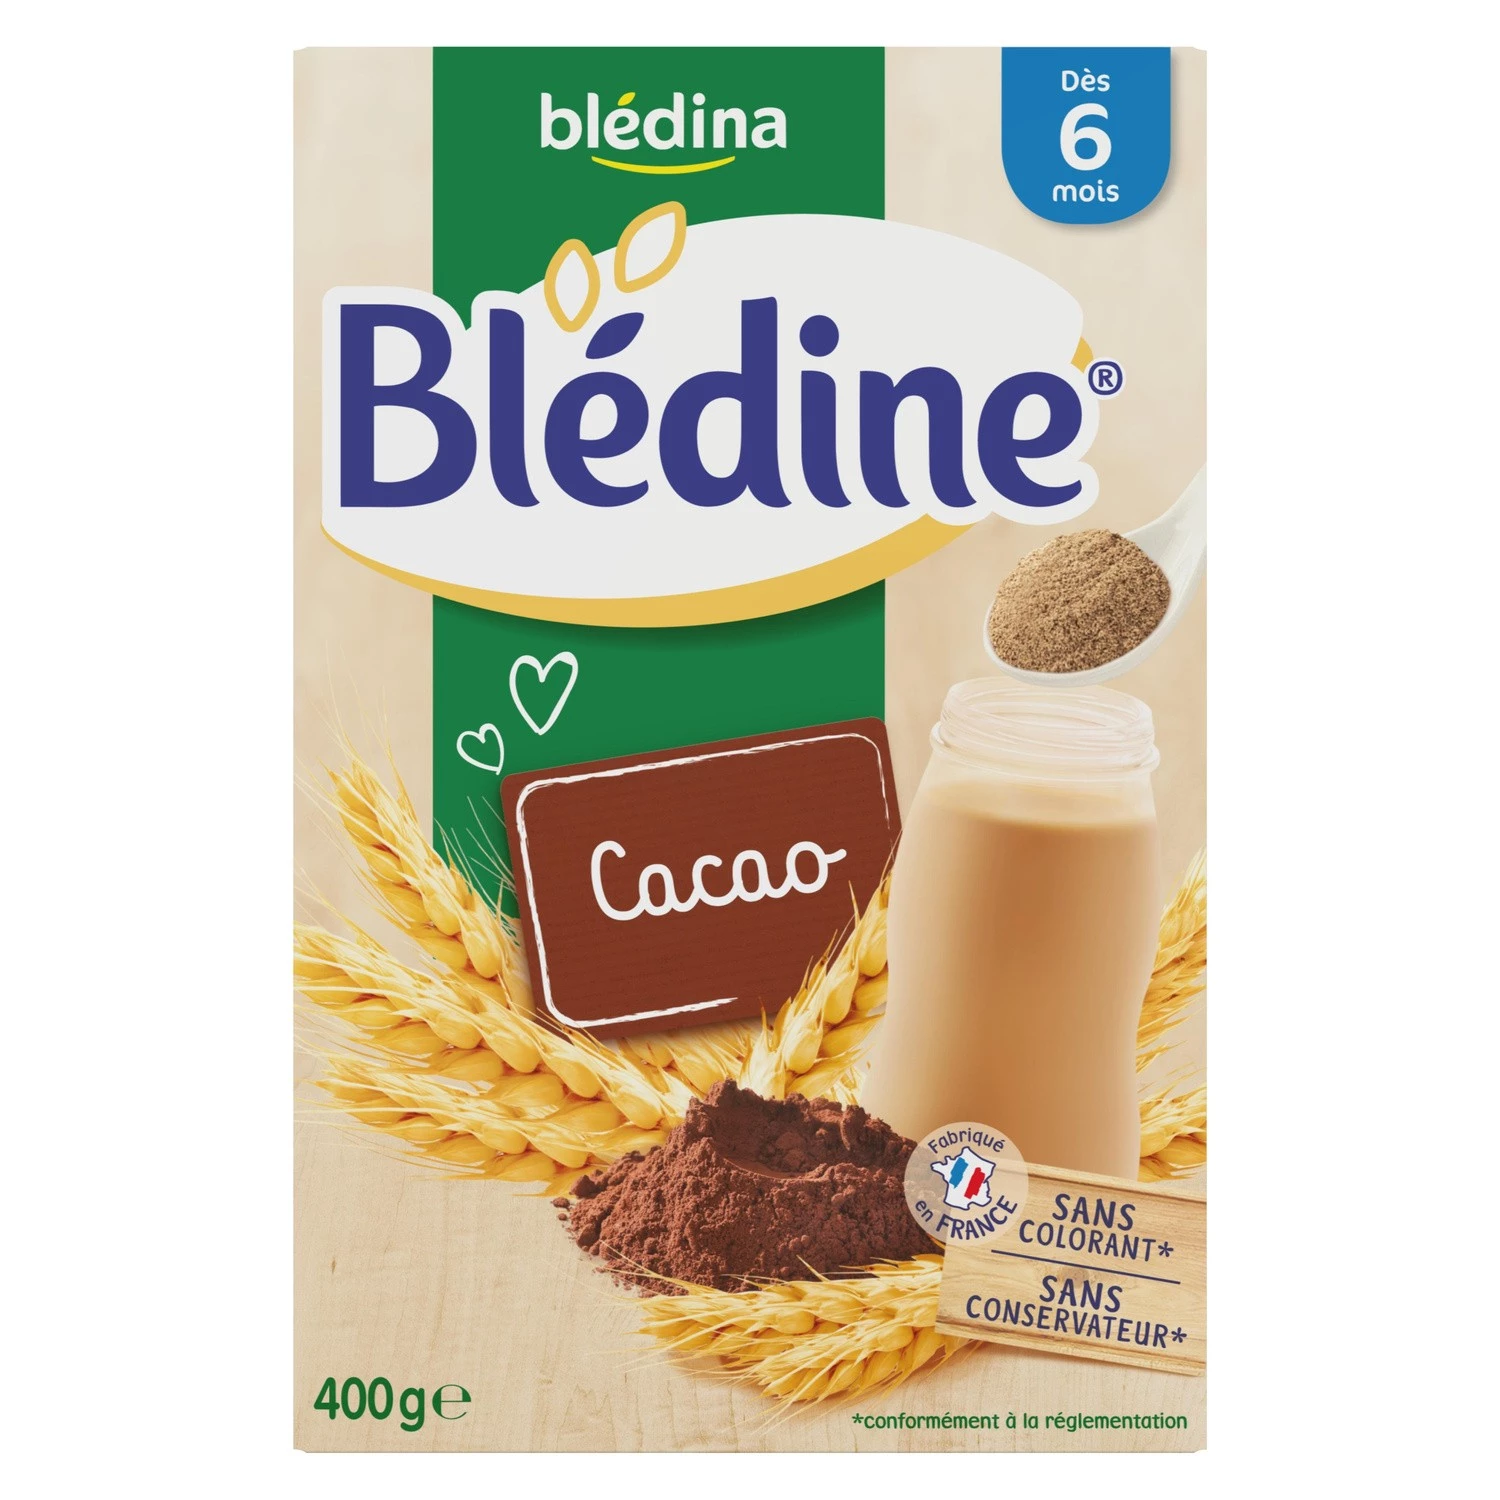 Cereais infantis de cacau Bledine a partir dos 6 meses 400g - BLEDINA